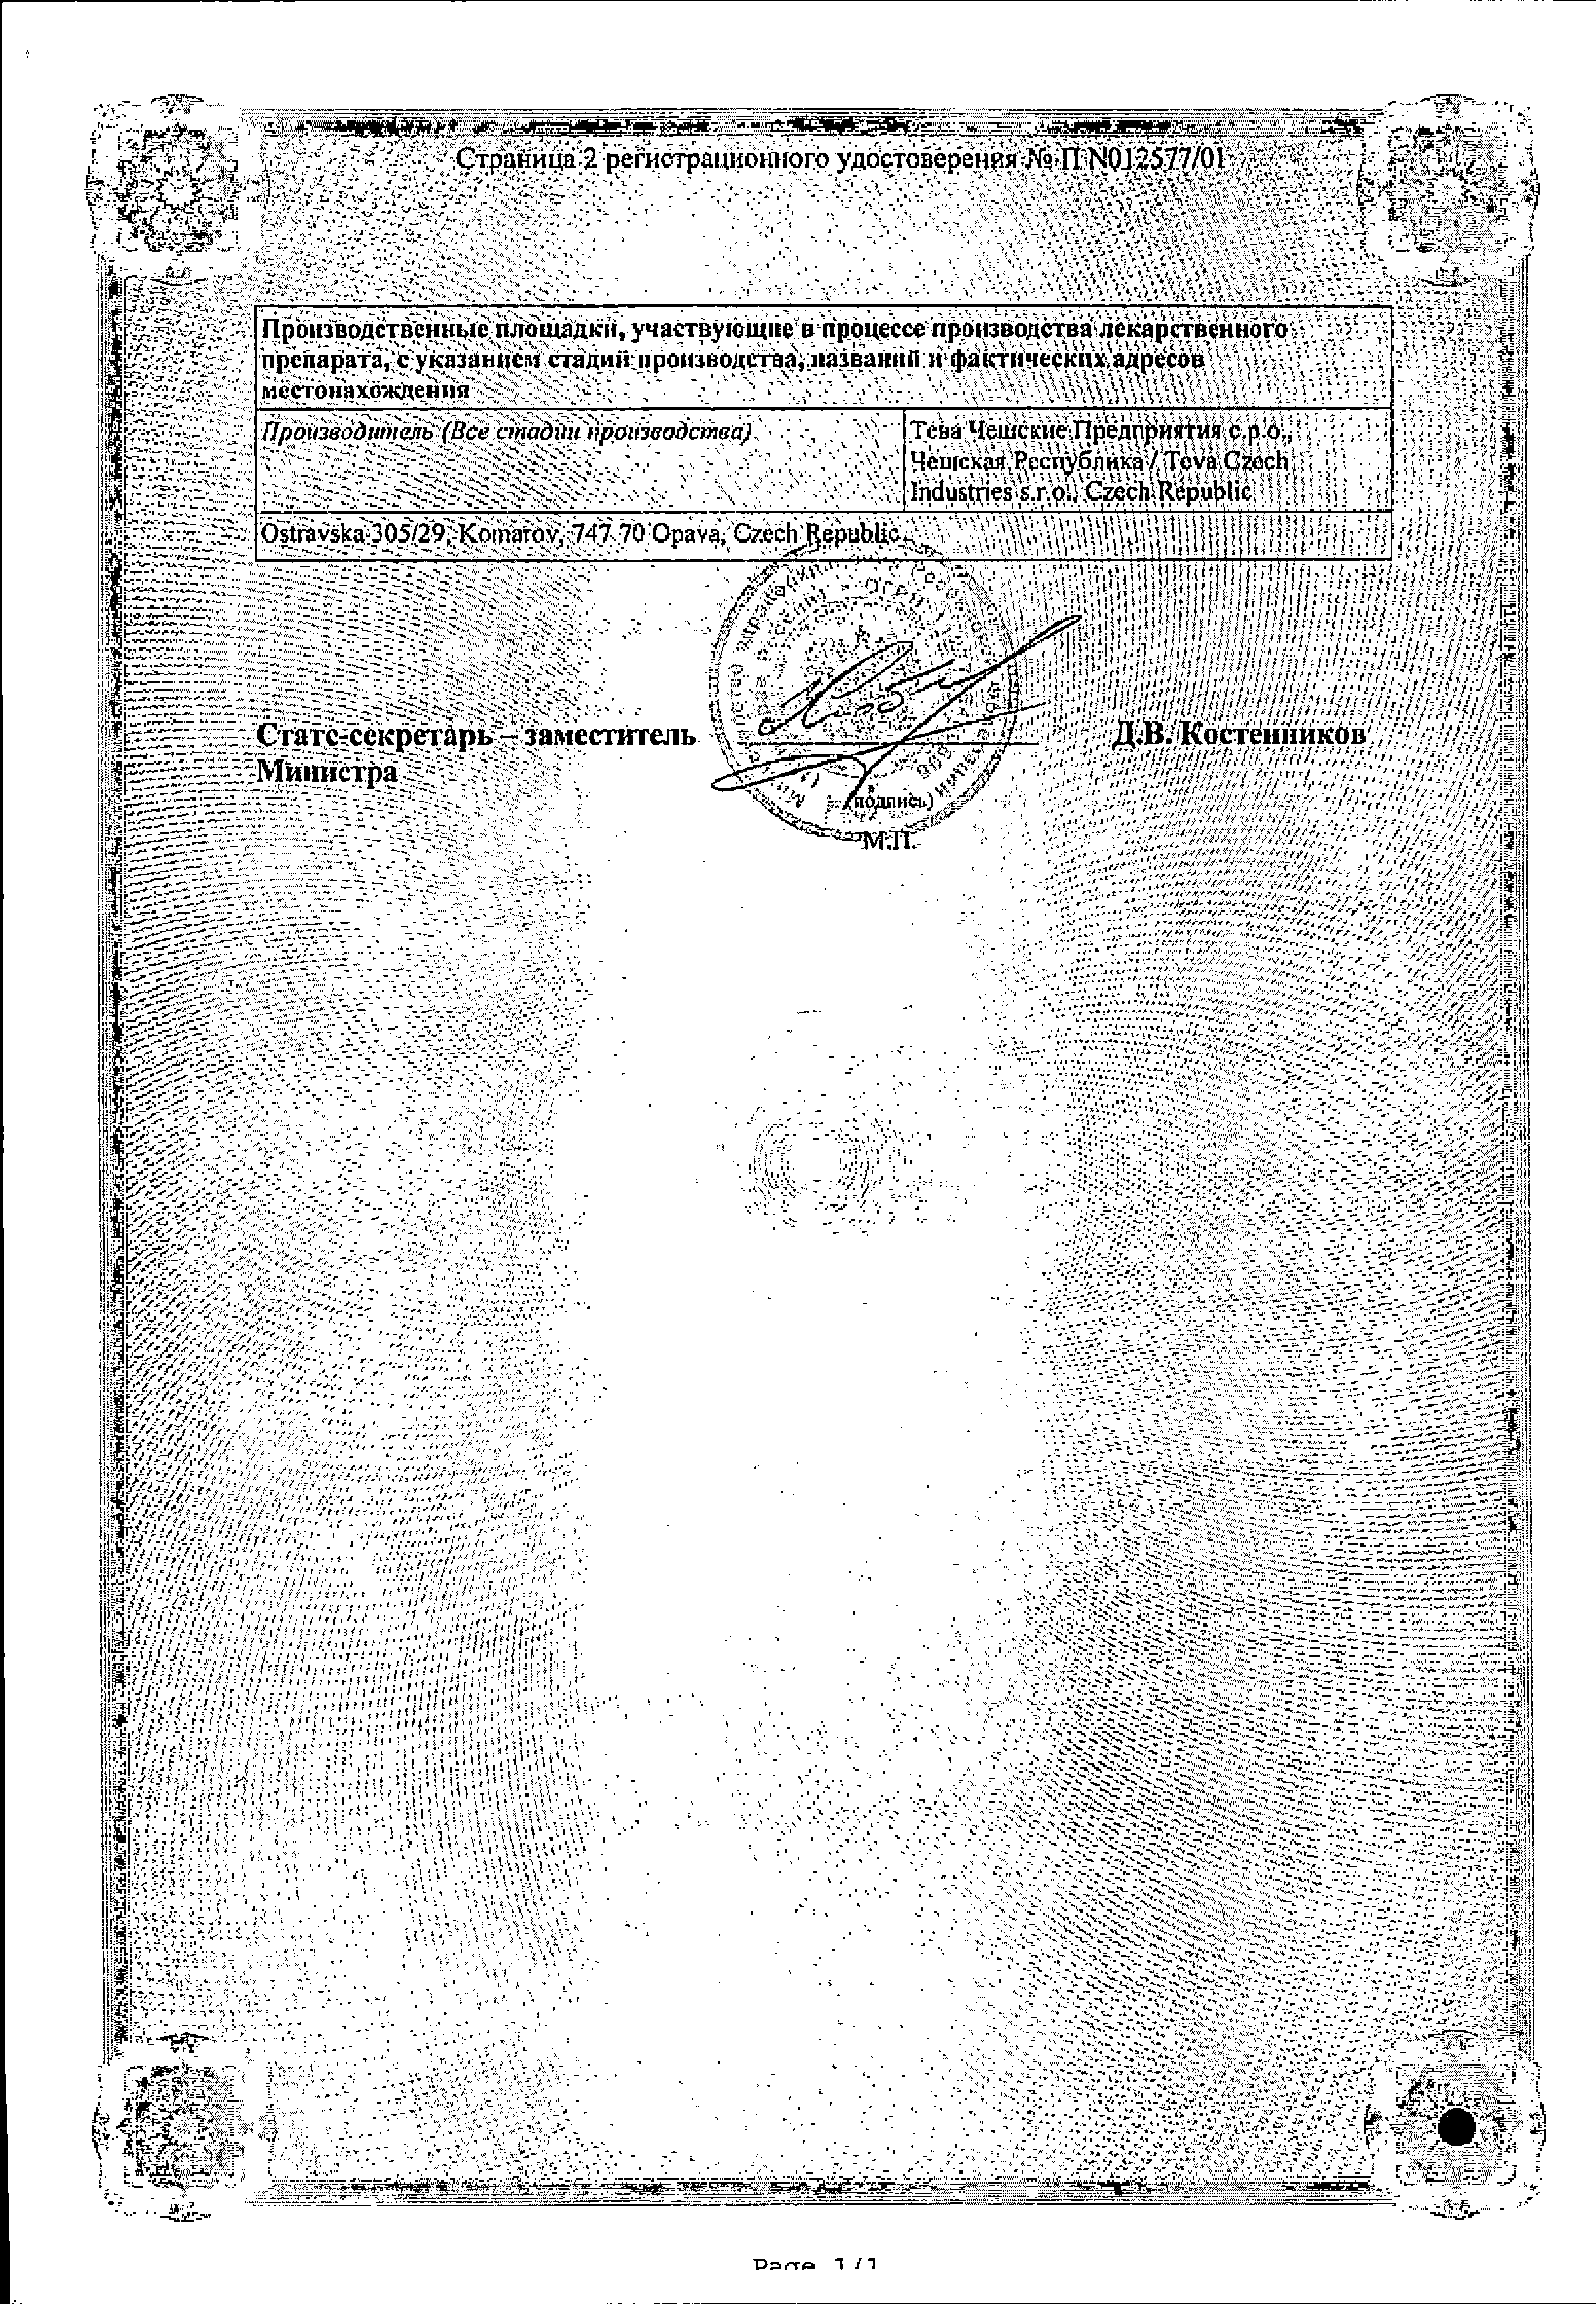 Амбробене Стоптуссин сертификат